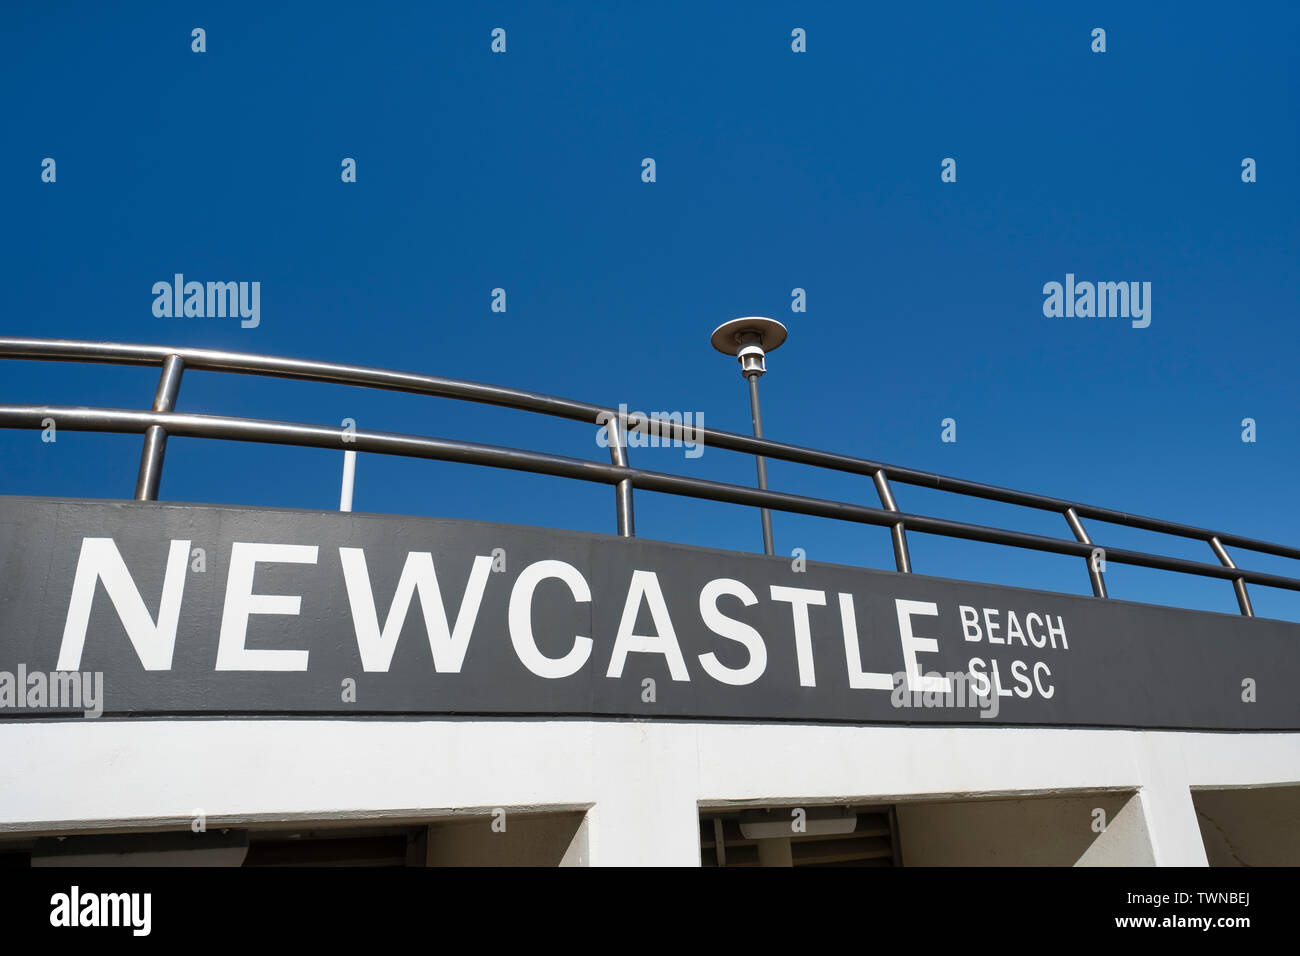 NEWCASTLE, AUSTRALIEN - Jule 10 2019 Newcastle Beach Surf Lifesaving Club außen vor einem klaren blauen Himmel Stockfoto